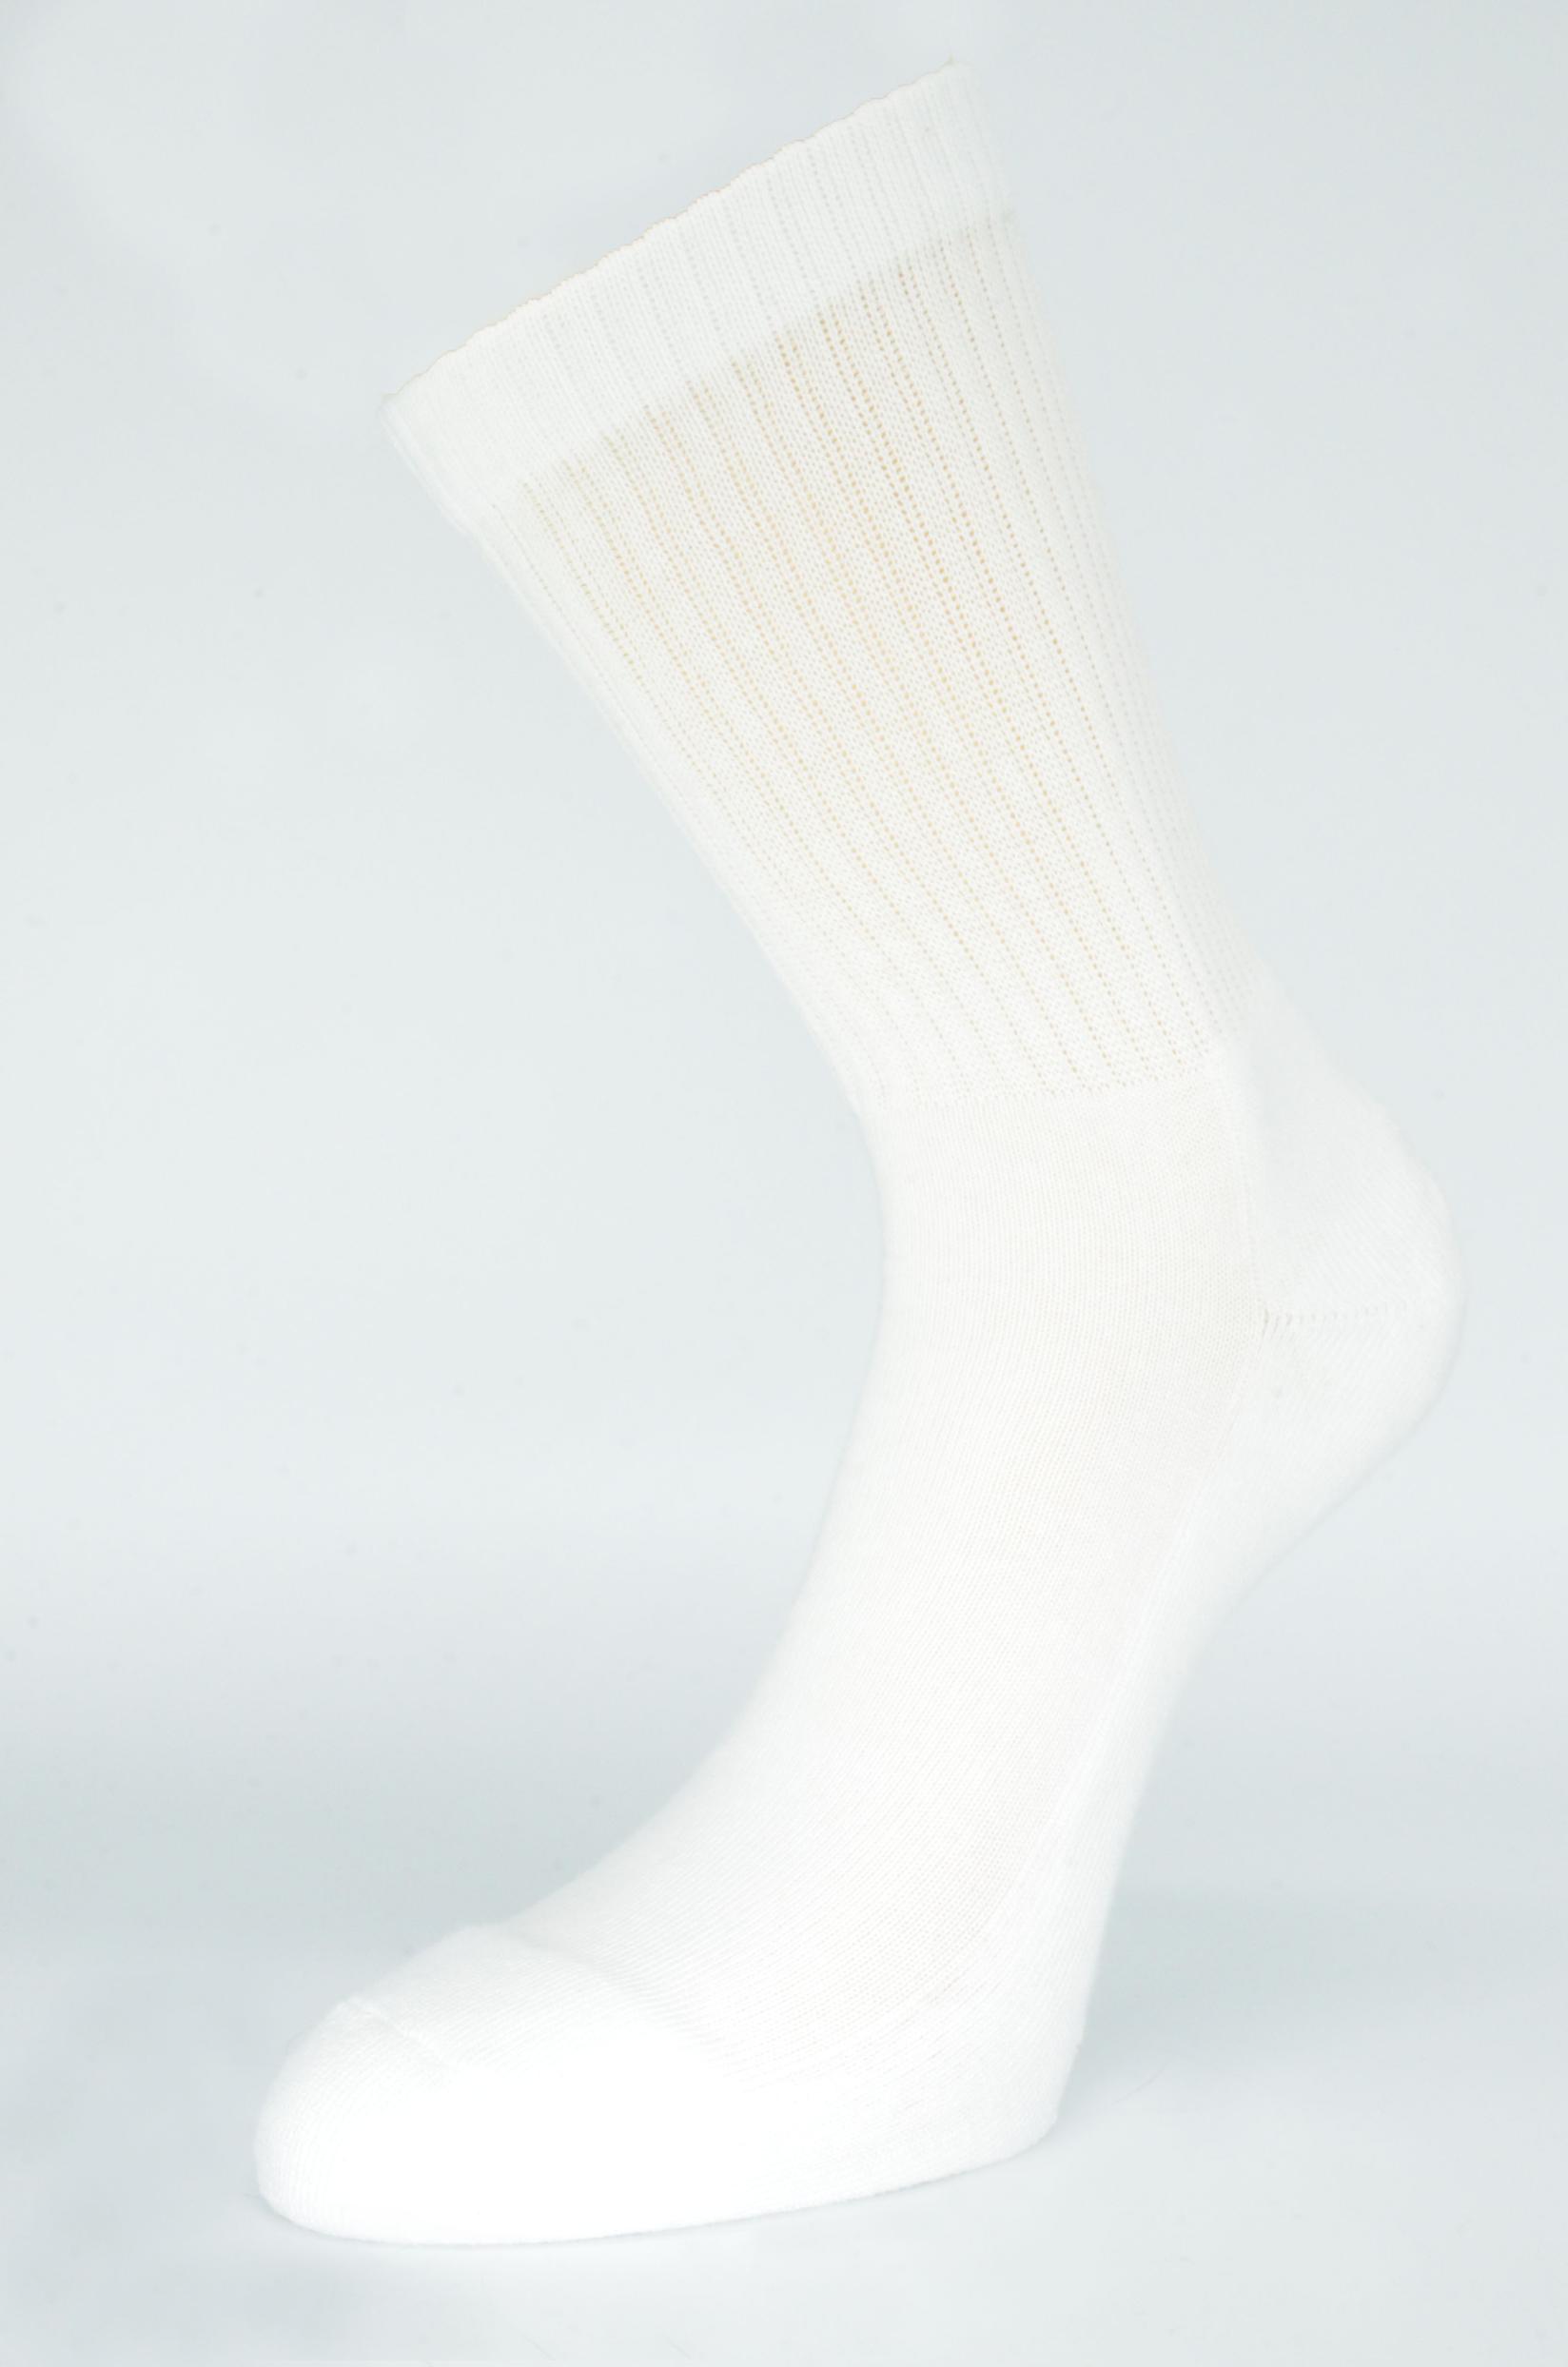 Slike GERBI Sportske čarape Sport Style m1 bele